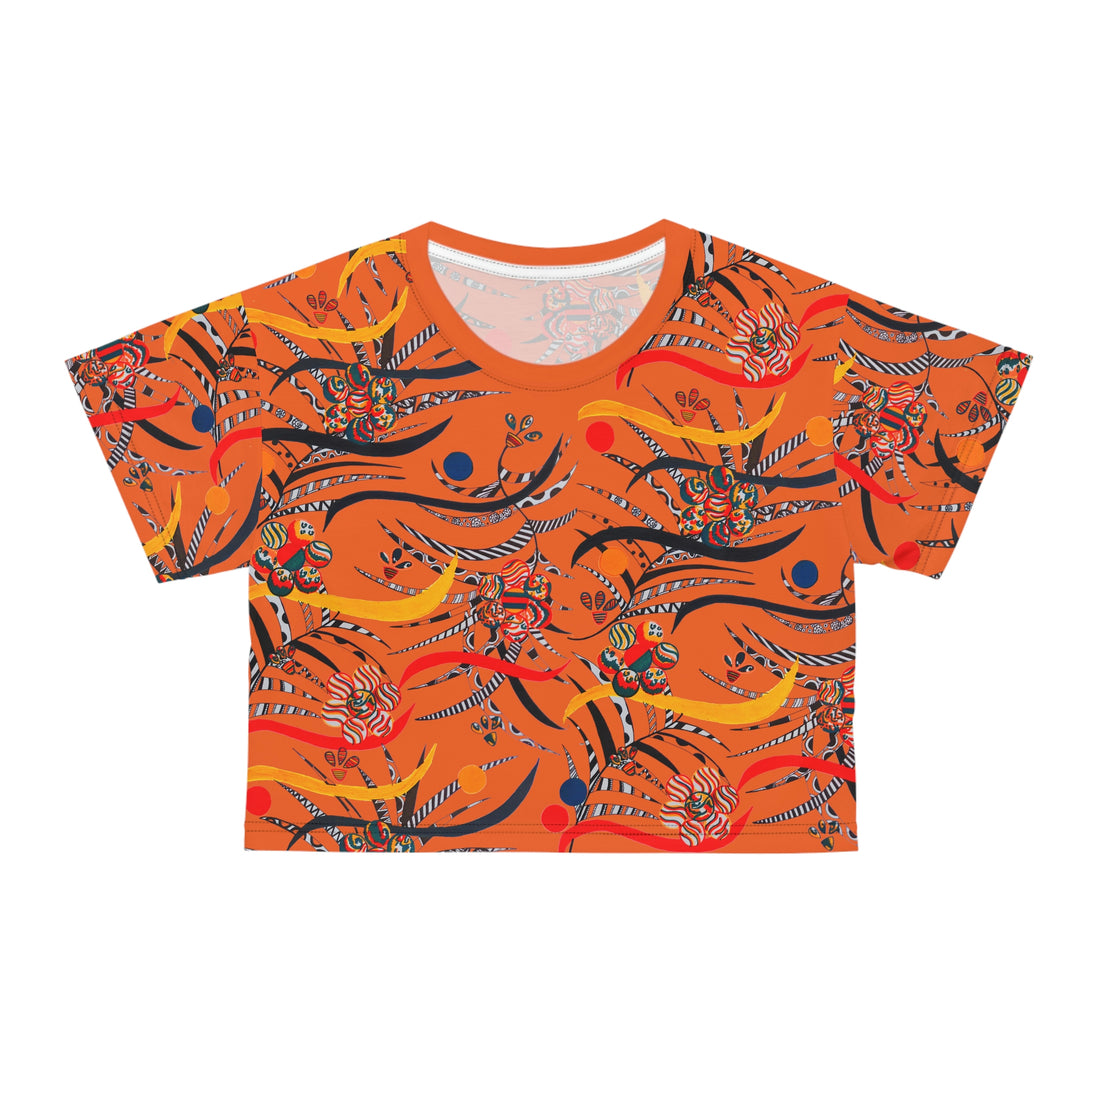 Orange cropped t-shirt